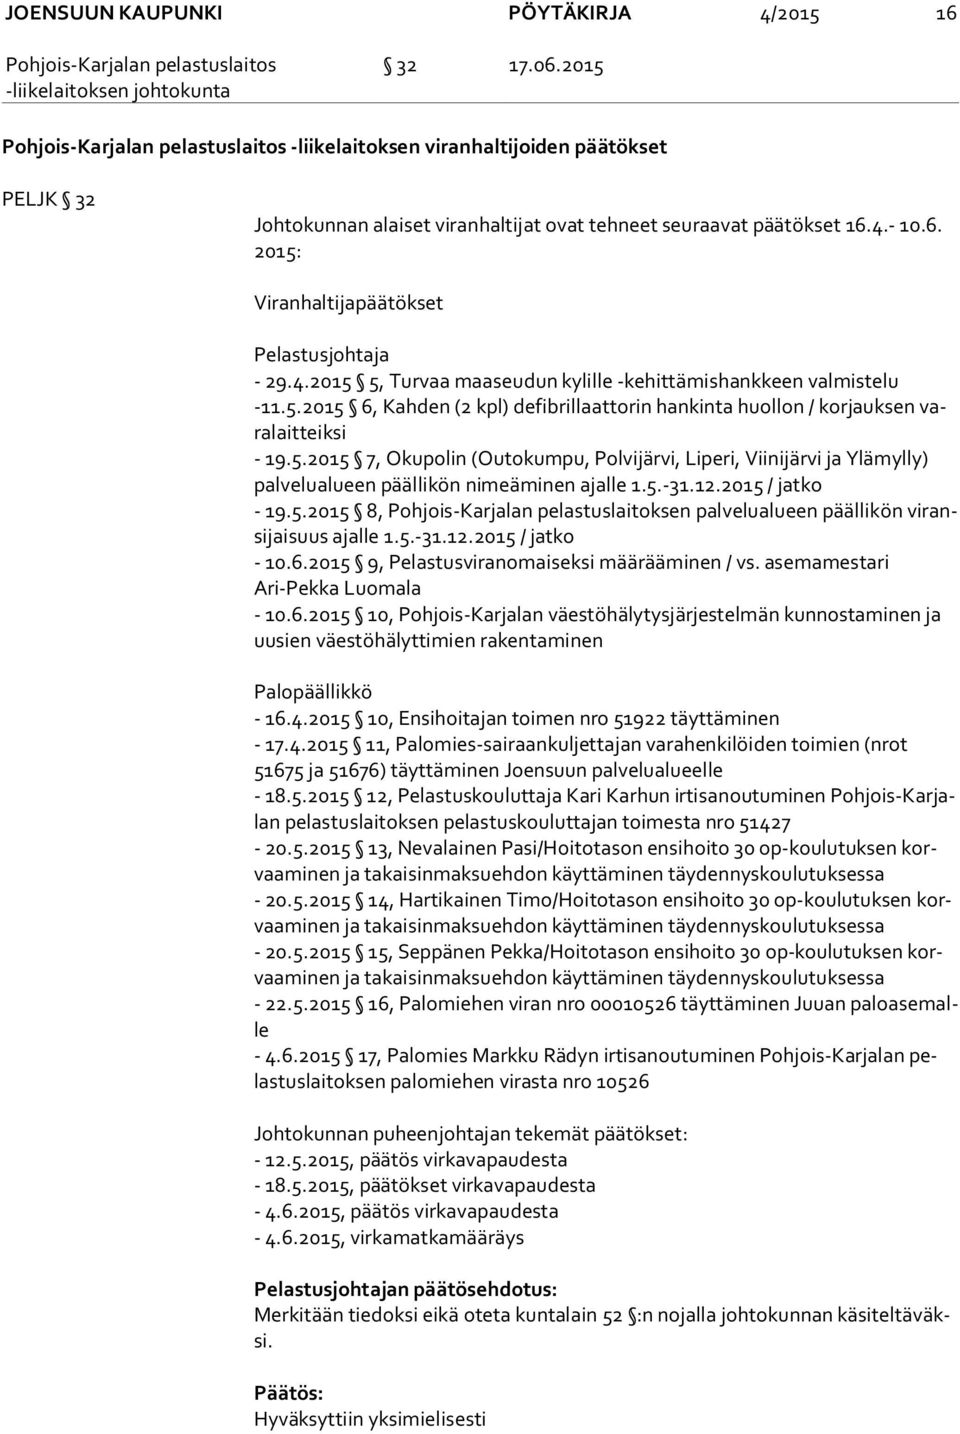 5.-31.12.2015 / jatko - 19.5.2015 8, Pohjois-Karjalan pelastuslaitoksen palvelualueen päällikön vi ransi jai suus ajalle 1.5.-31.12.2015 / jatko - 10.6.2015 9, Pelastusviranomaiseksi määrääminen / vs.